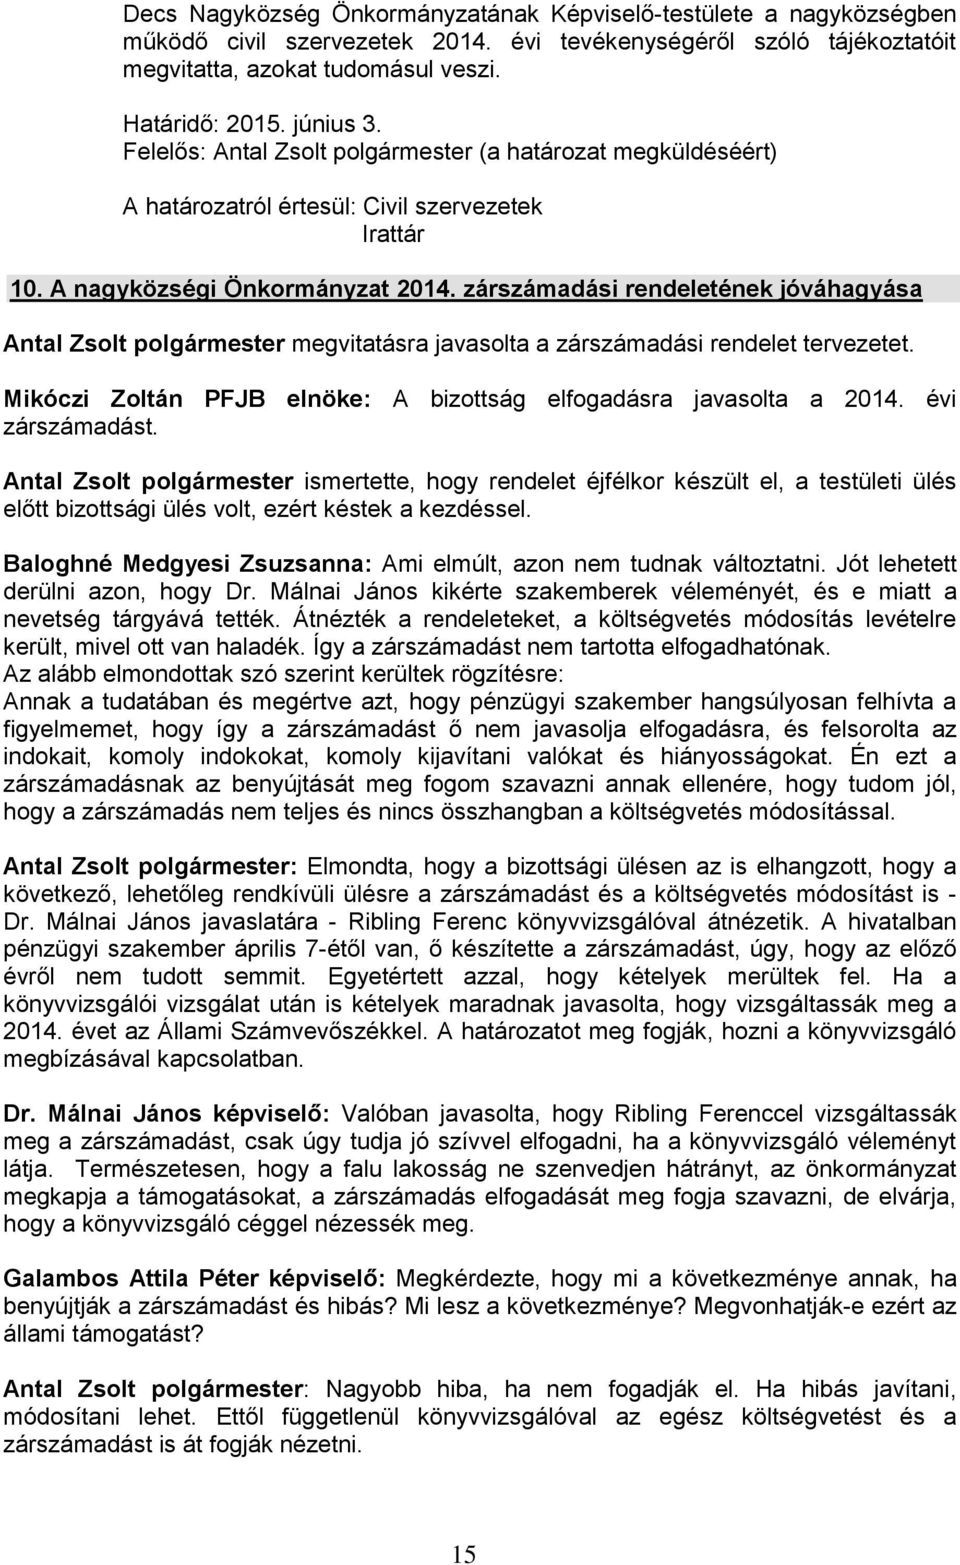 zárszámadási rendeletének jóváhagyása Antal Zsolt polgármester megvitatásra javasolta a zárszámadási rendelet tervezetet. Mikóczi Zoltán PFJB elnöke: A bizottság elfogadásra javasolta a 2014.